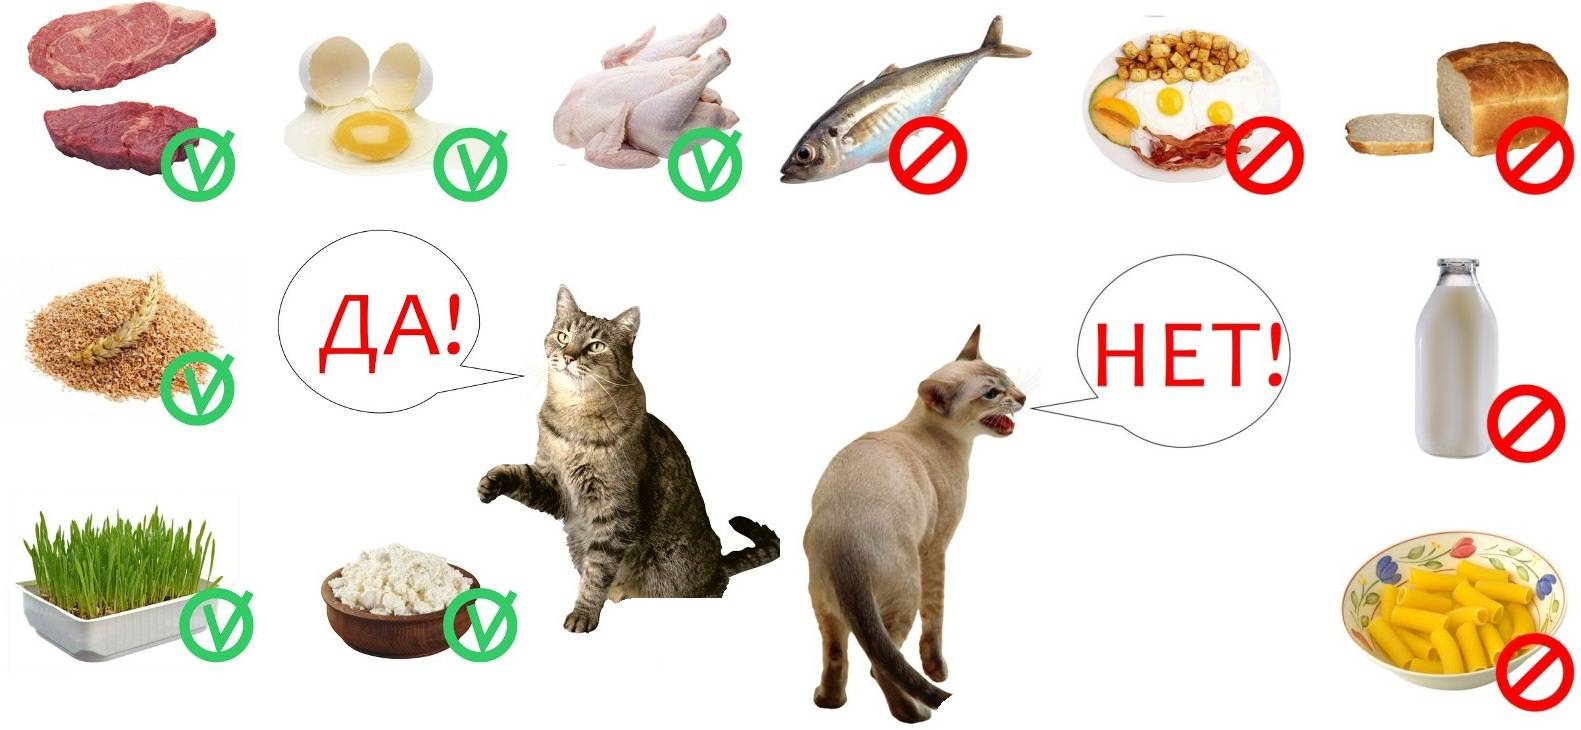 Отвечаем на главный вопрос кошатников: можно ли кормить кошку сырым мясом?